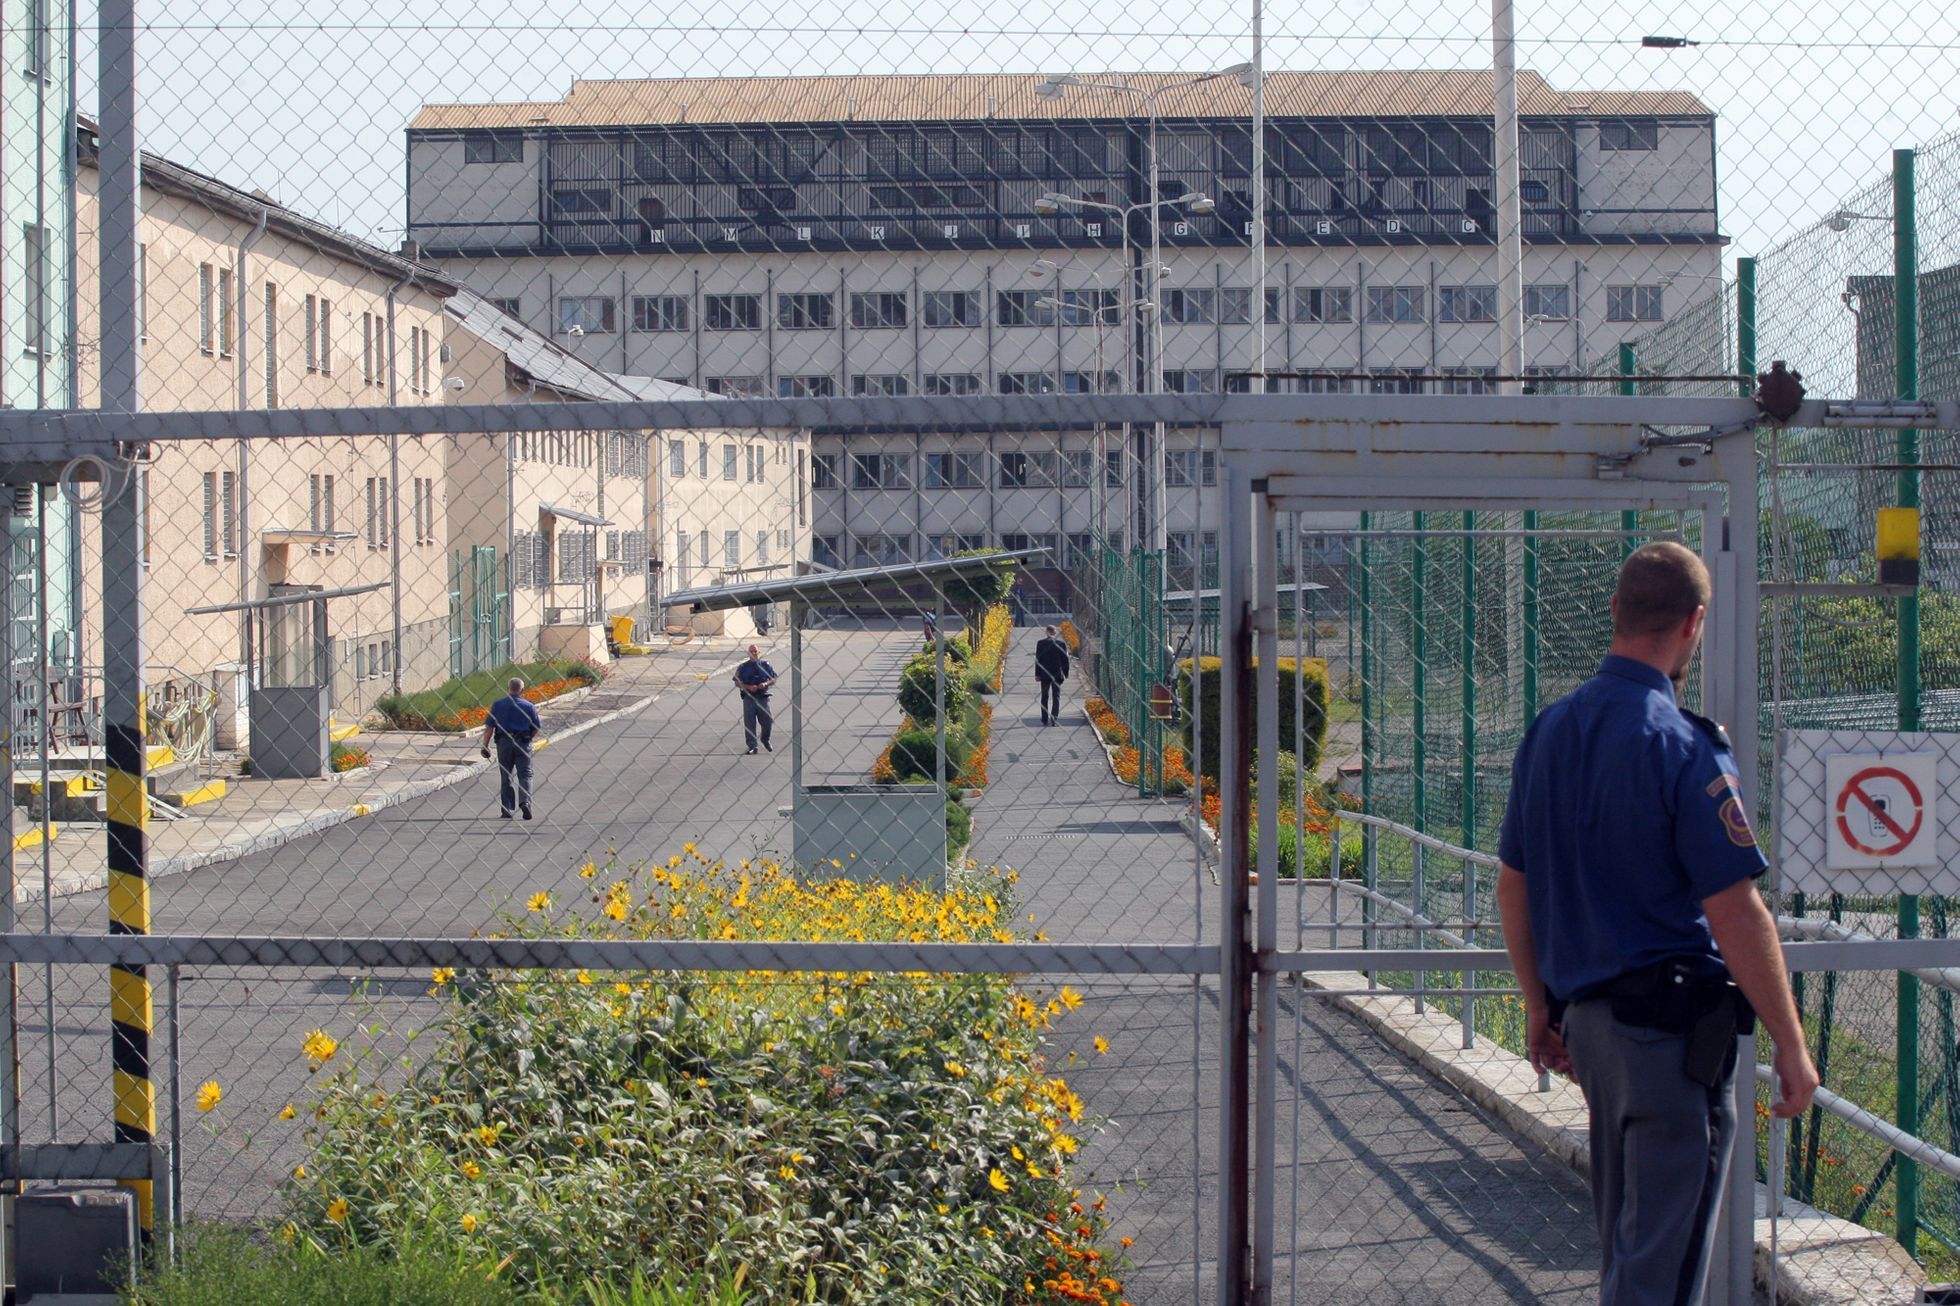 Věznice Vinařice